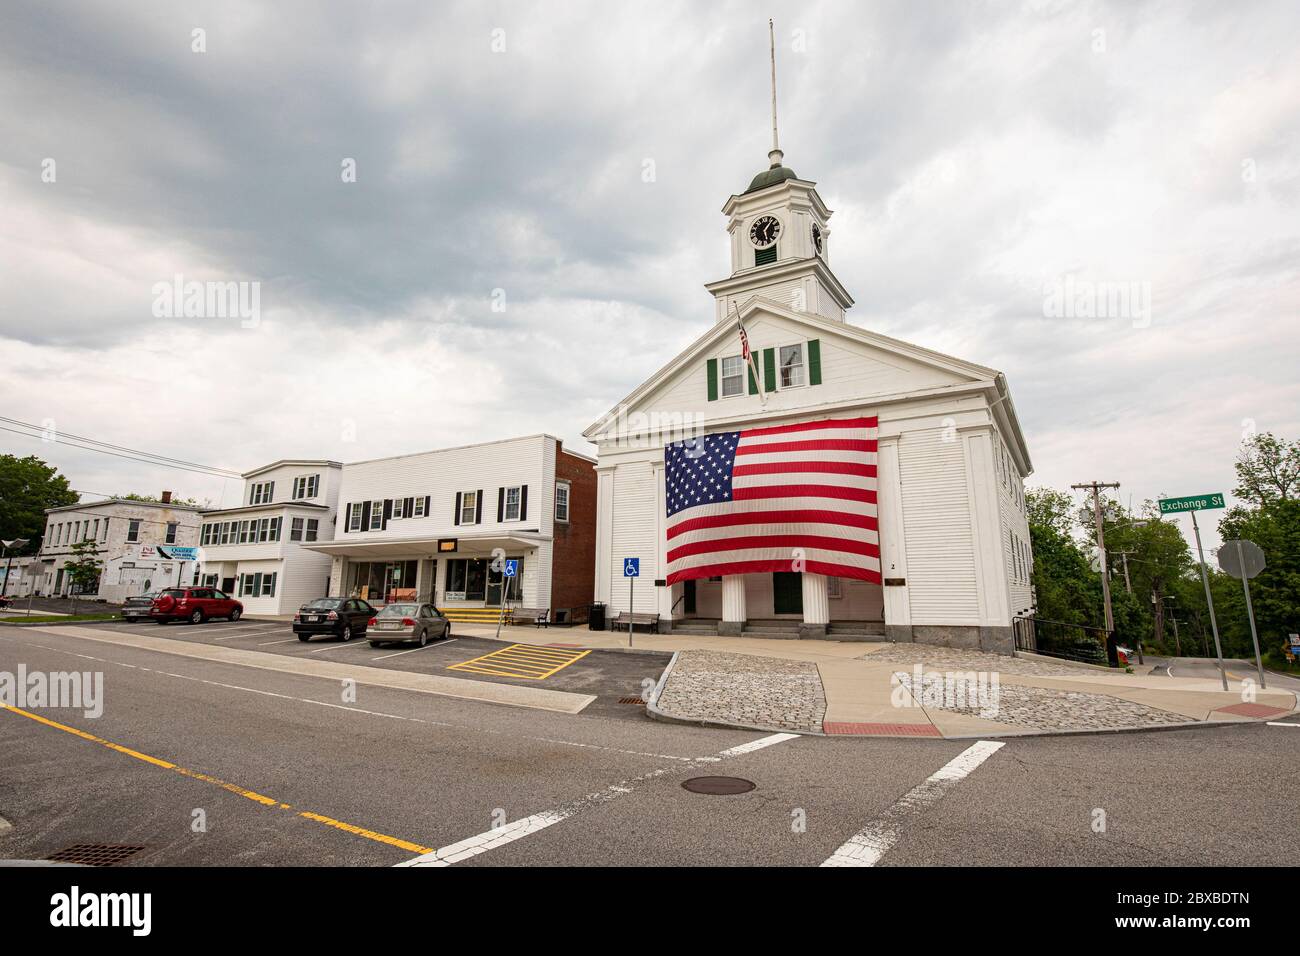 Das Barre, Massachusetts Town Hall mit einer sehr großen amerikanischen Flagge, die an der Vorderseite des Rathauses hängt. Stockfoto